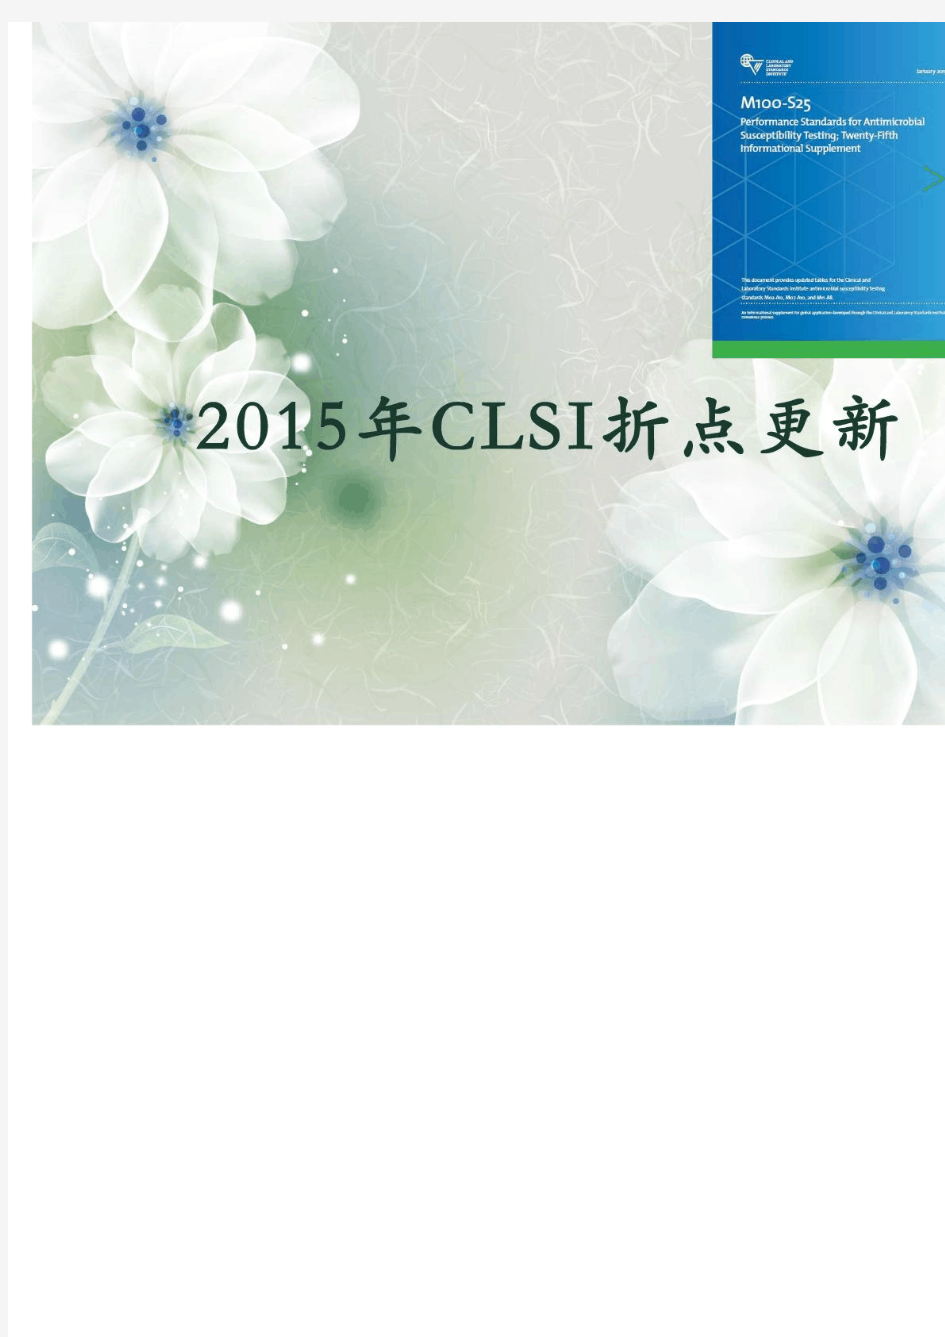 中文版2015clsi更新